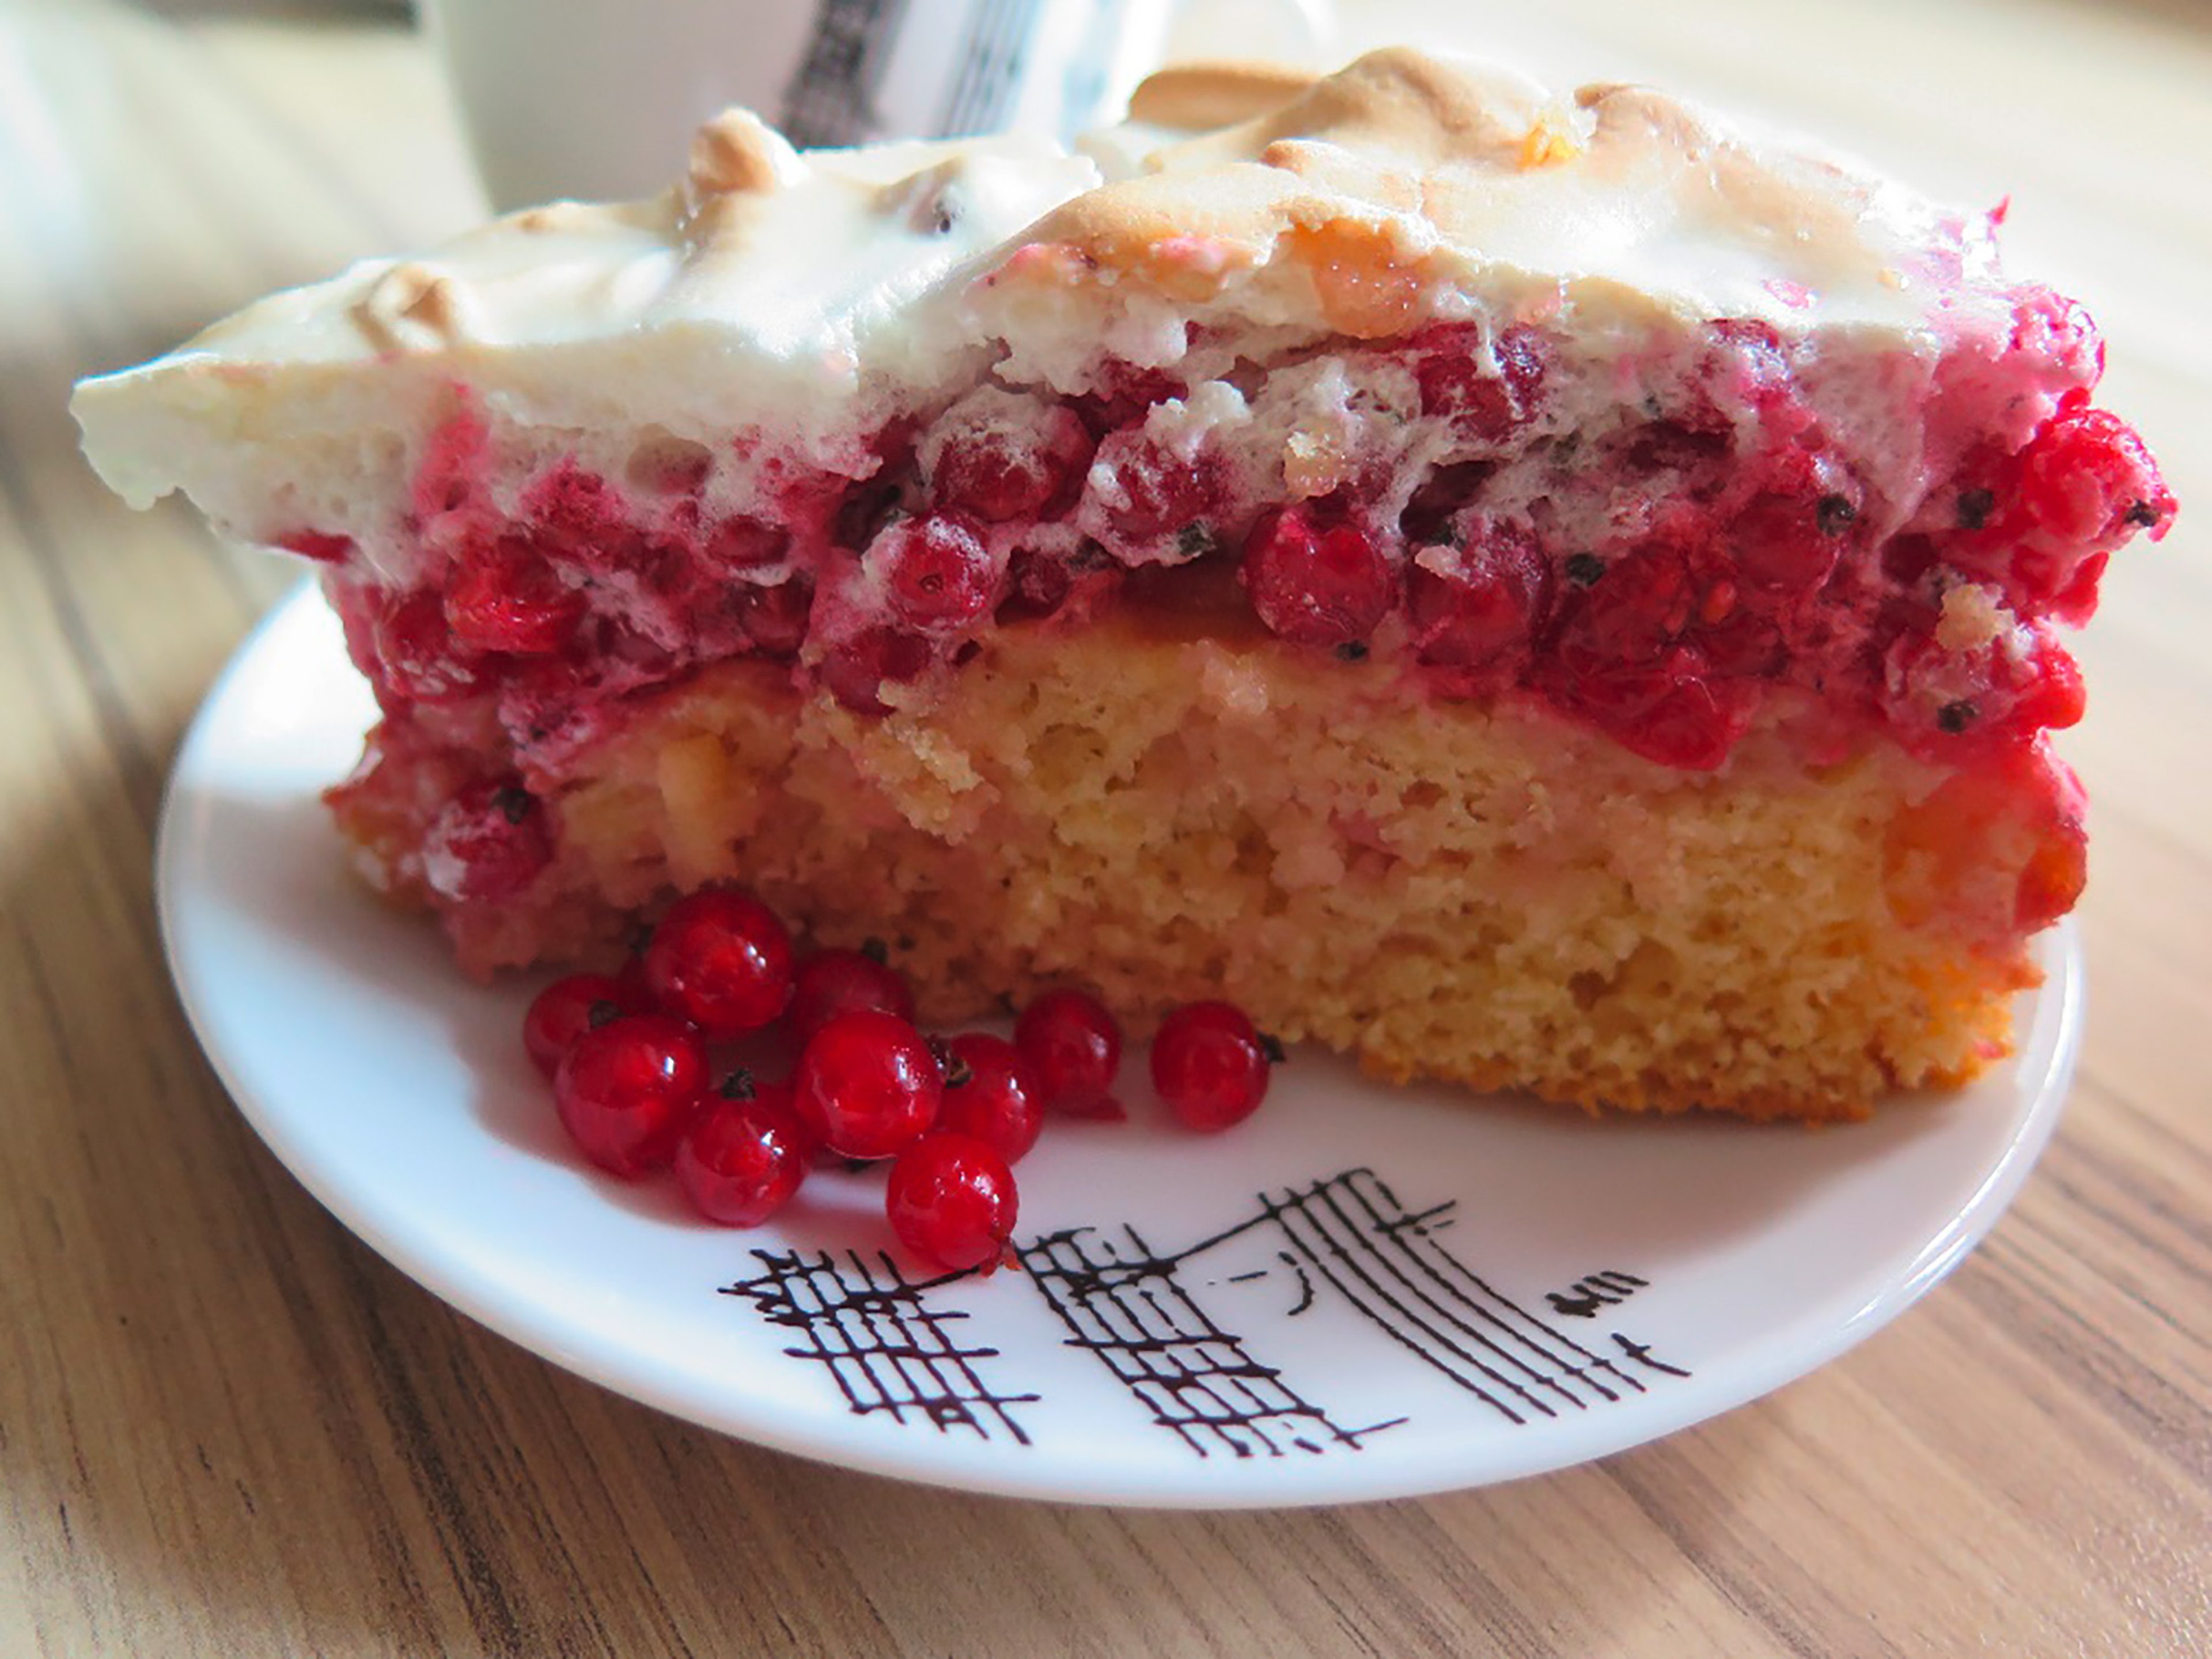 Red currant meringue cake